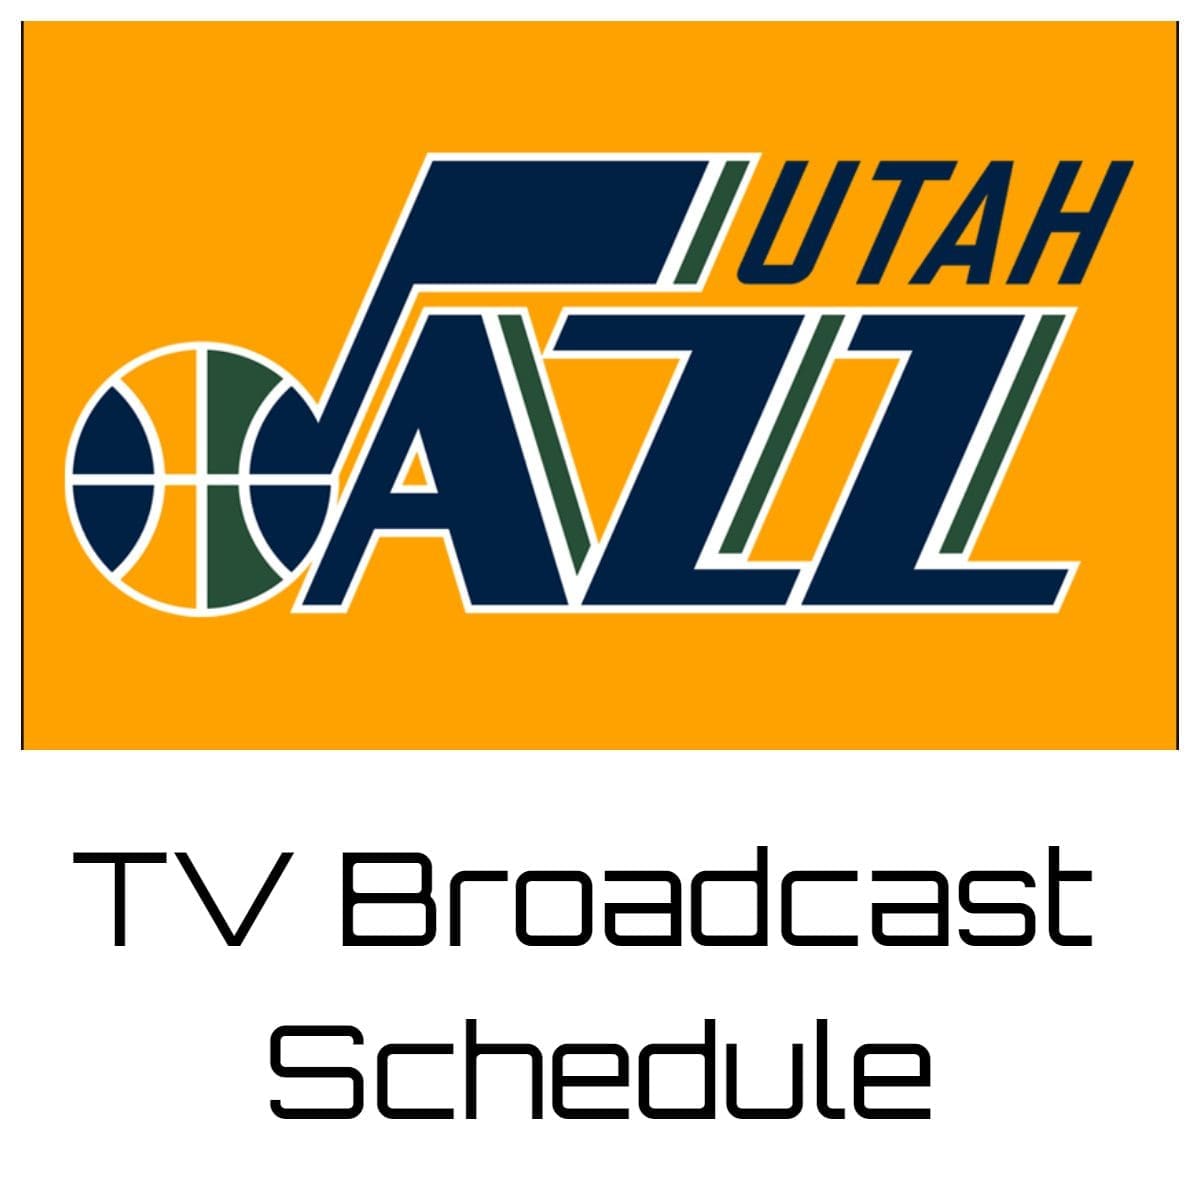 Utah Jazz TV Broadcast Schedule